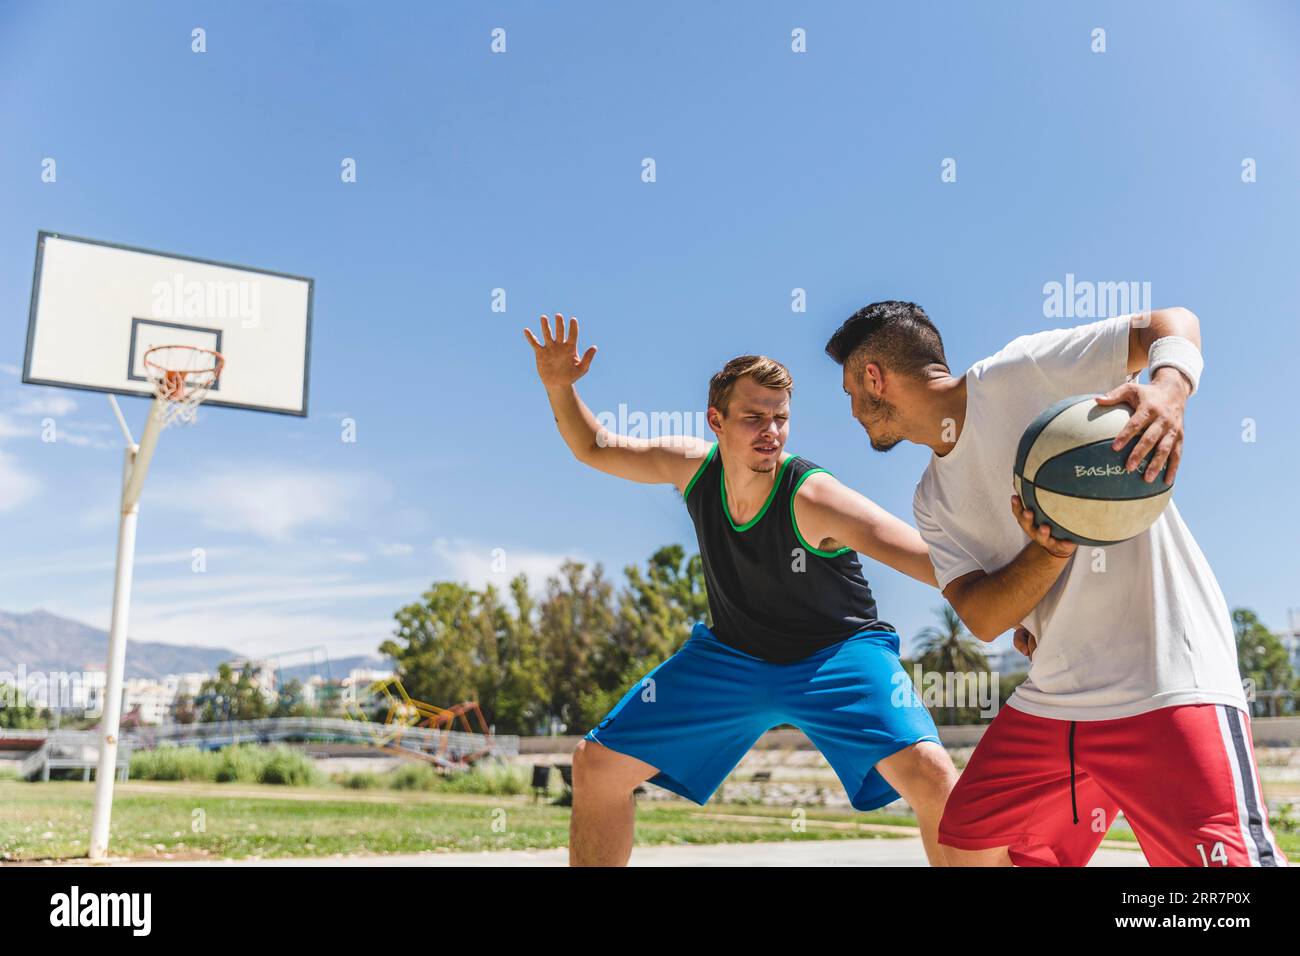 Jeune joueur masculin jouant avec un joueur de basket-ball Banque D'Images